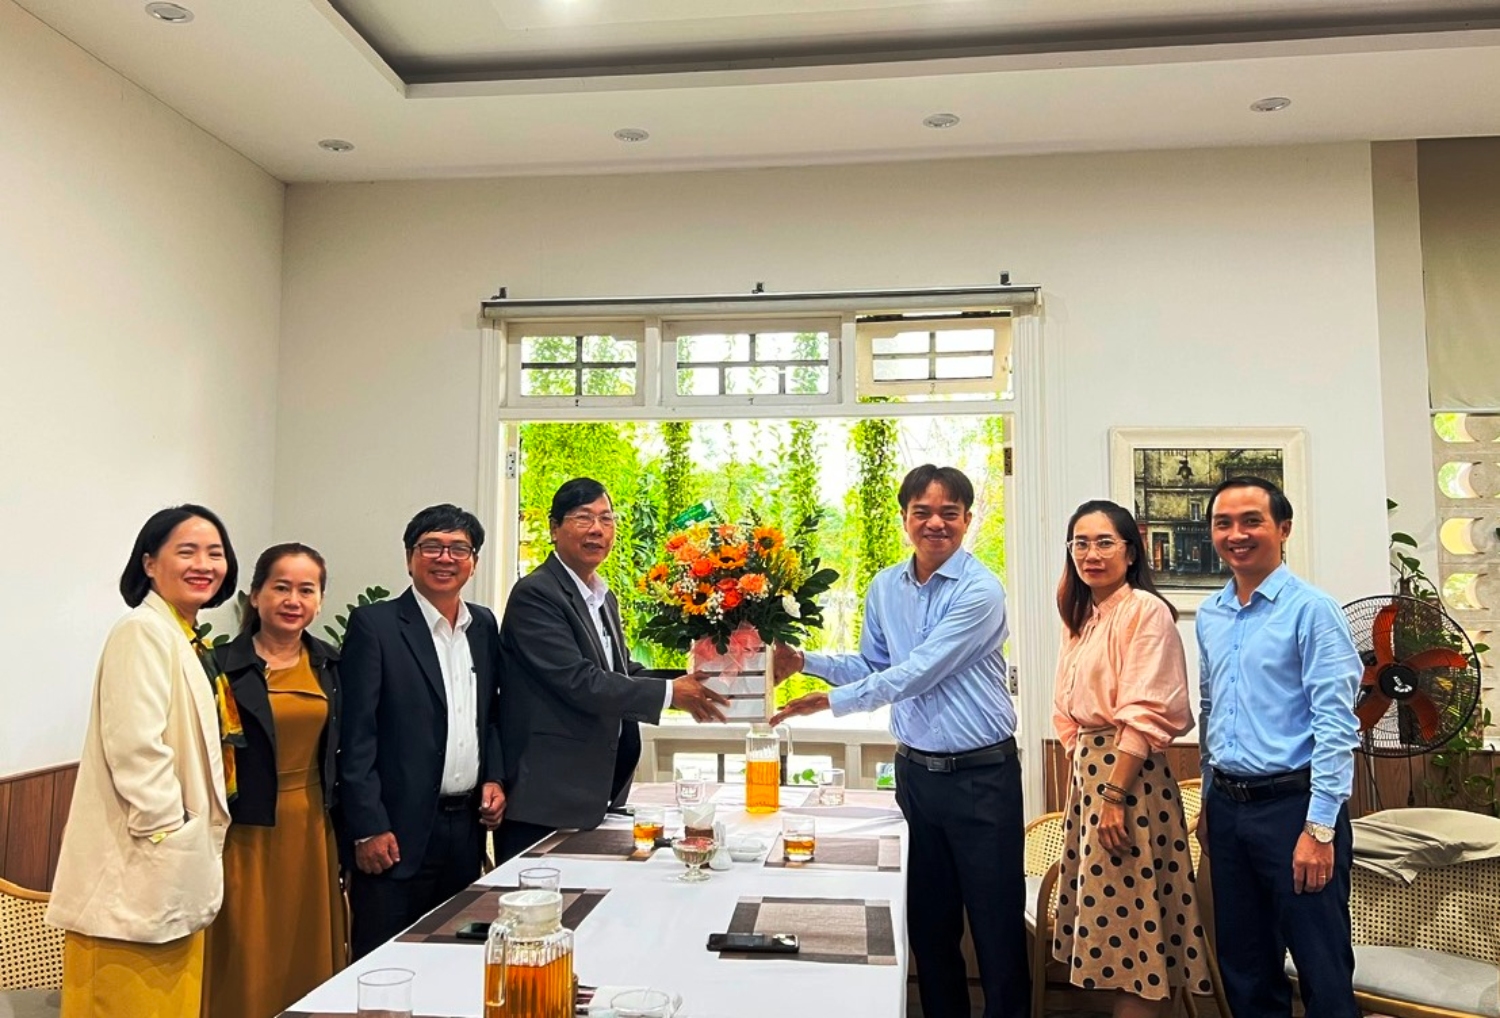 Đồng chí Nguyễn Duy Ân - Phó Bí thư Thường trực Thành ủy tặng hoa chúc mừng Trung tâm Chính trị thành phố